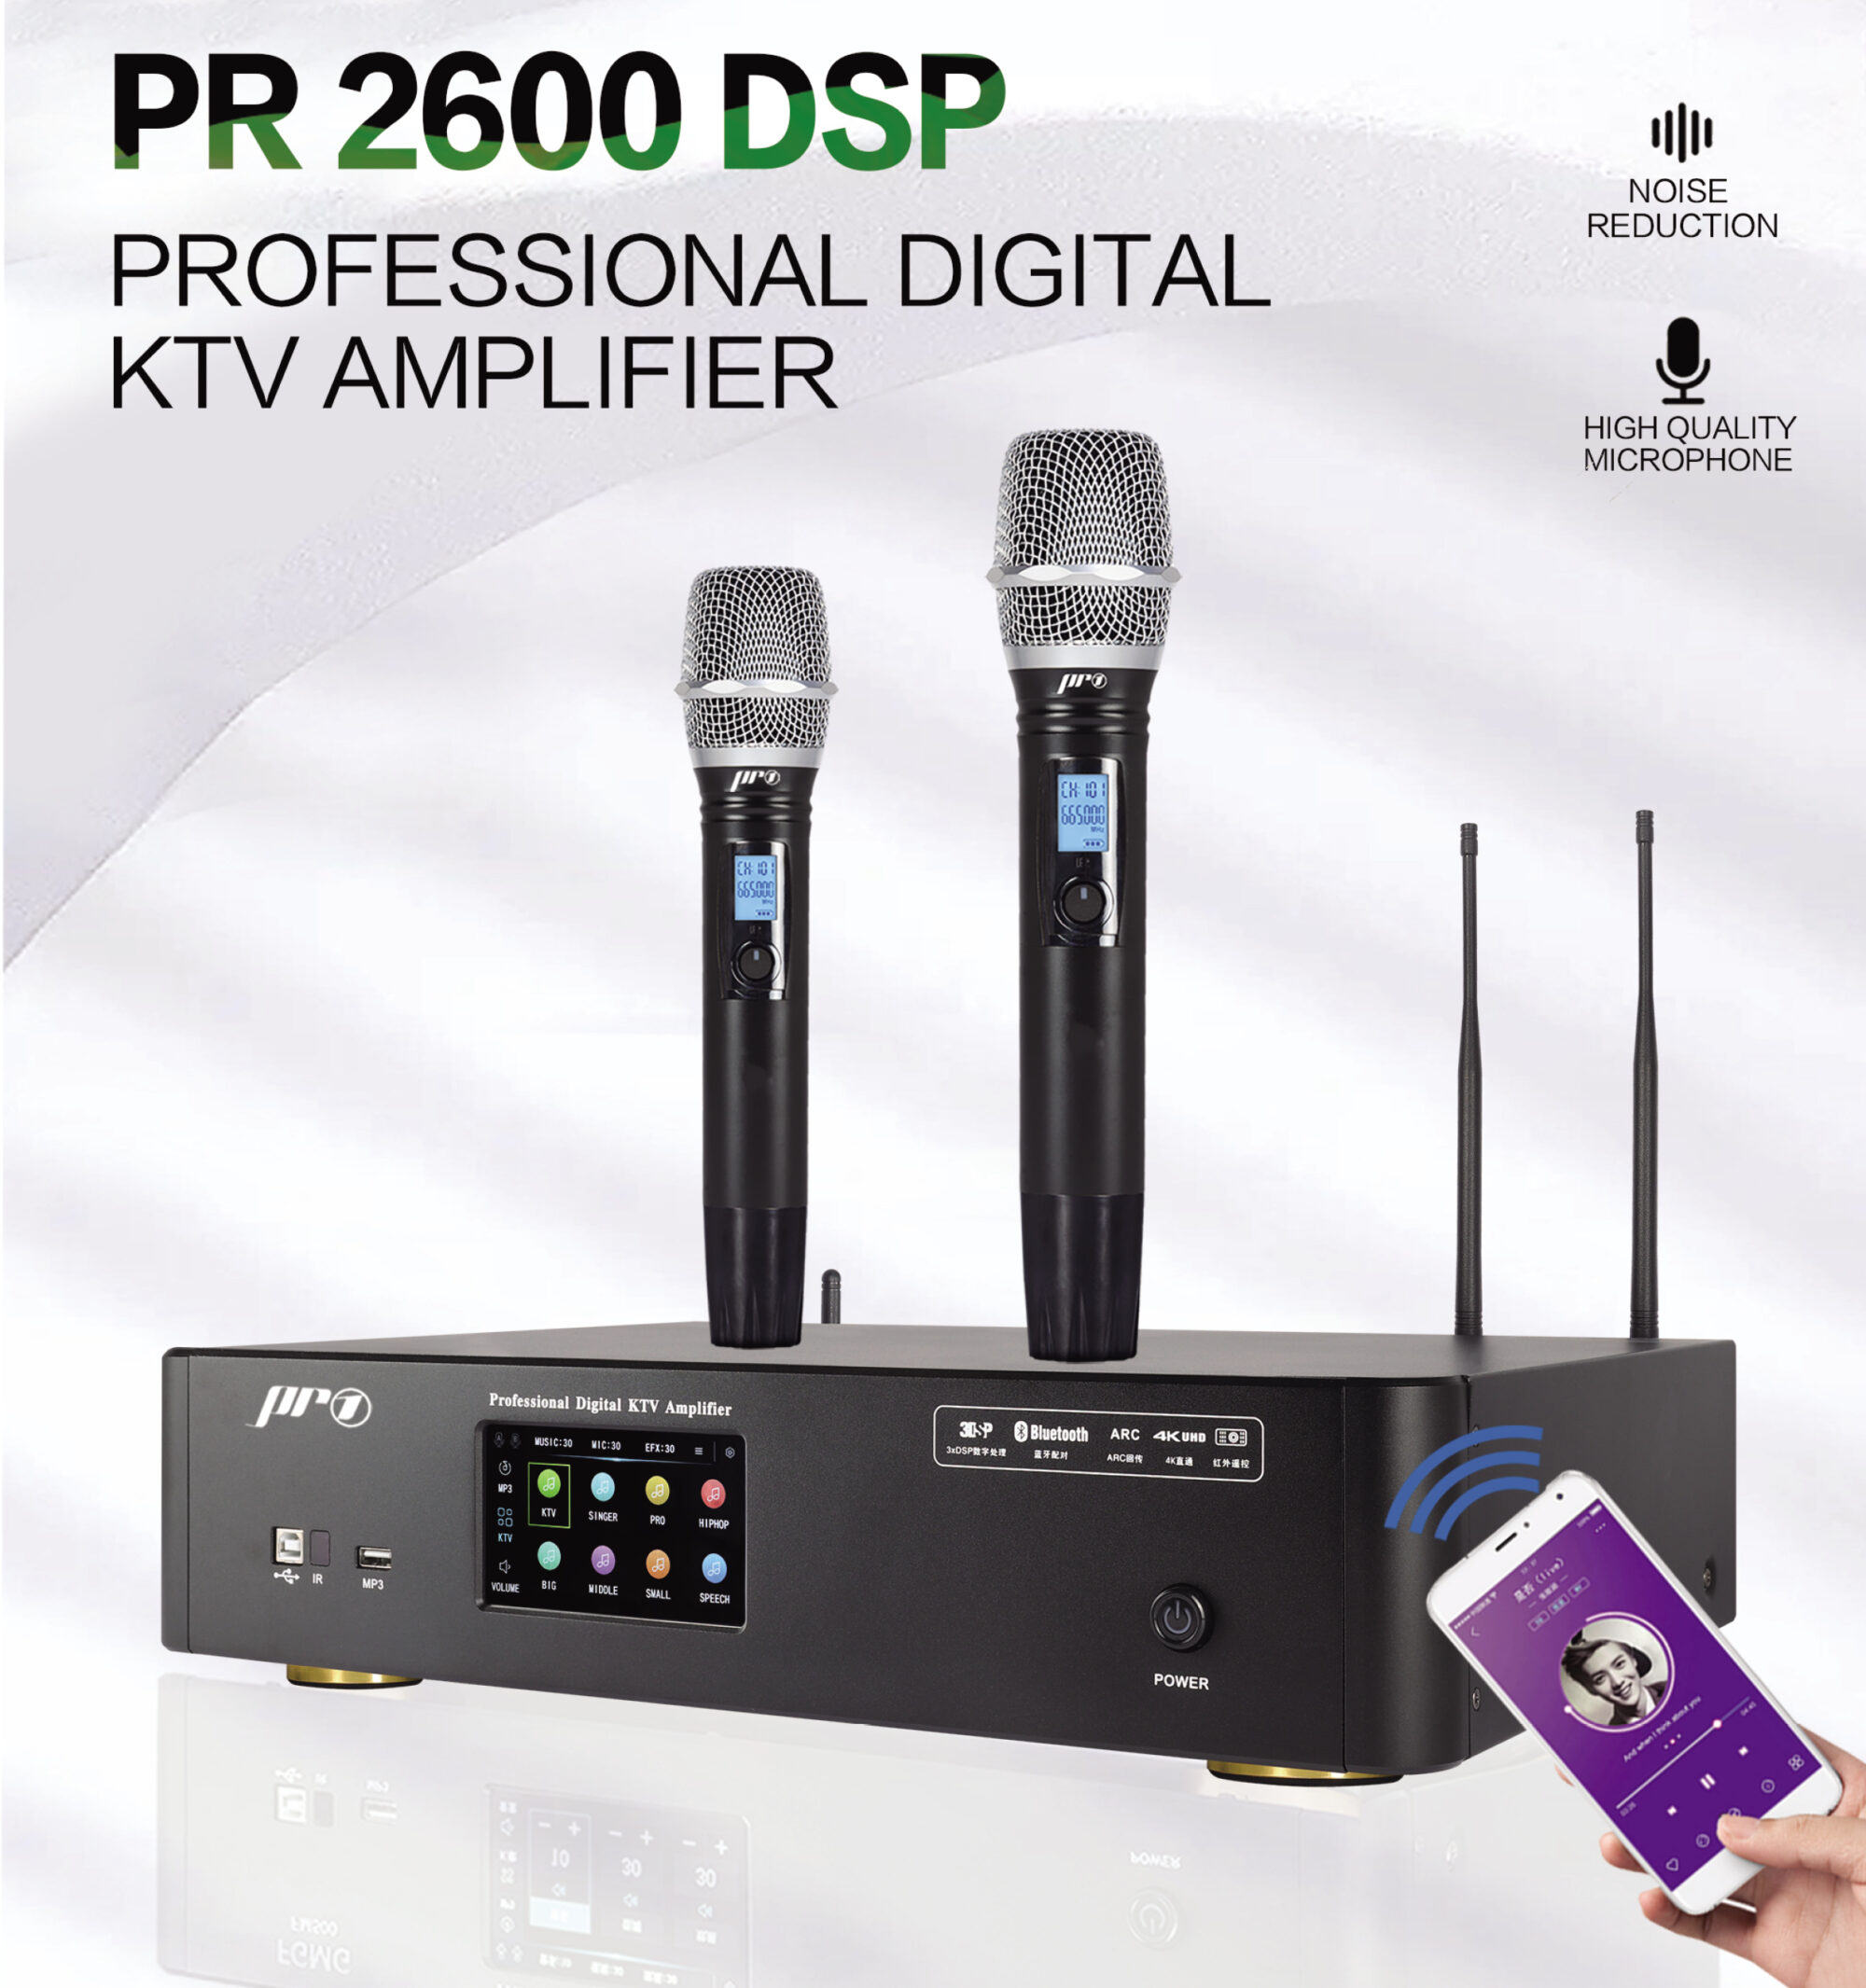 Amply karaoke digital Pro 1 PR 2600 DSP